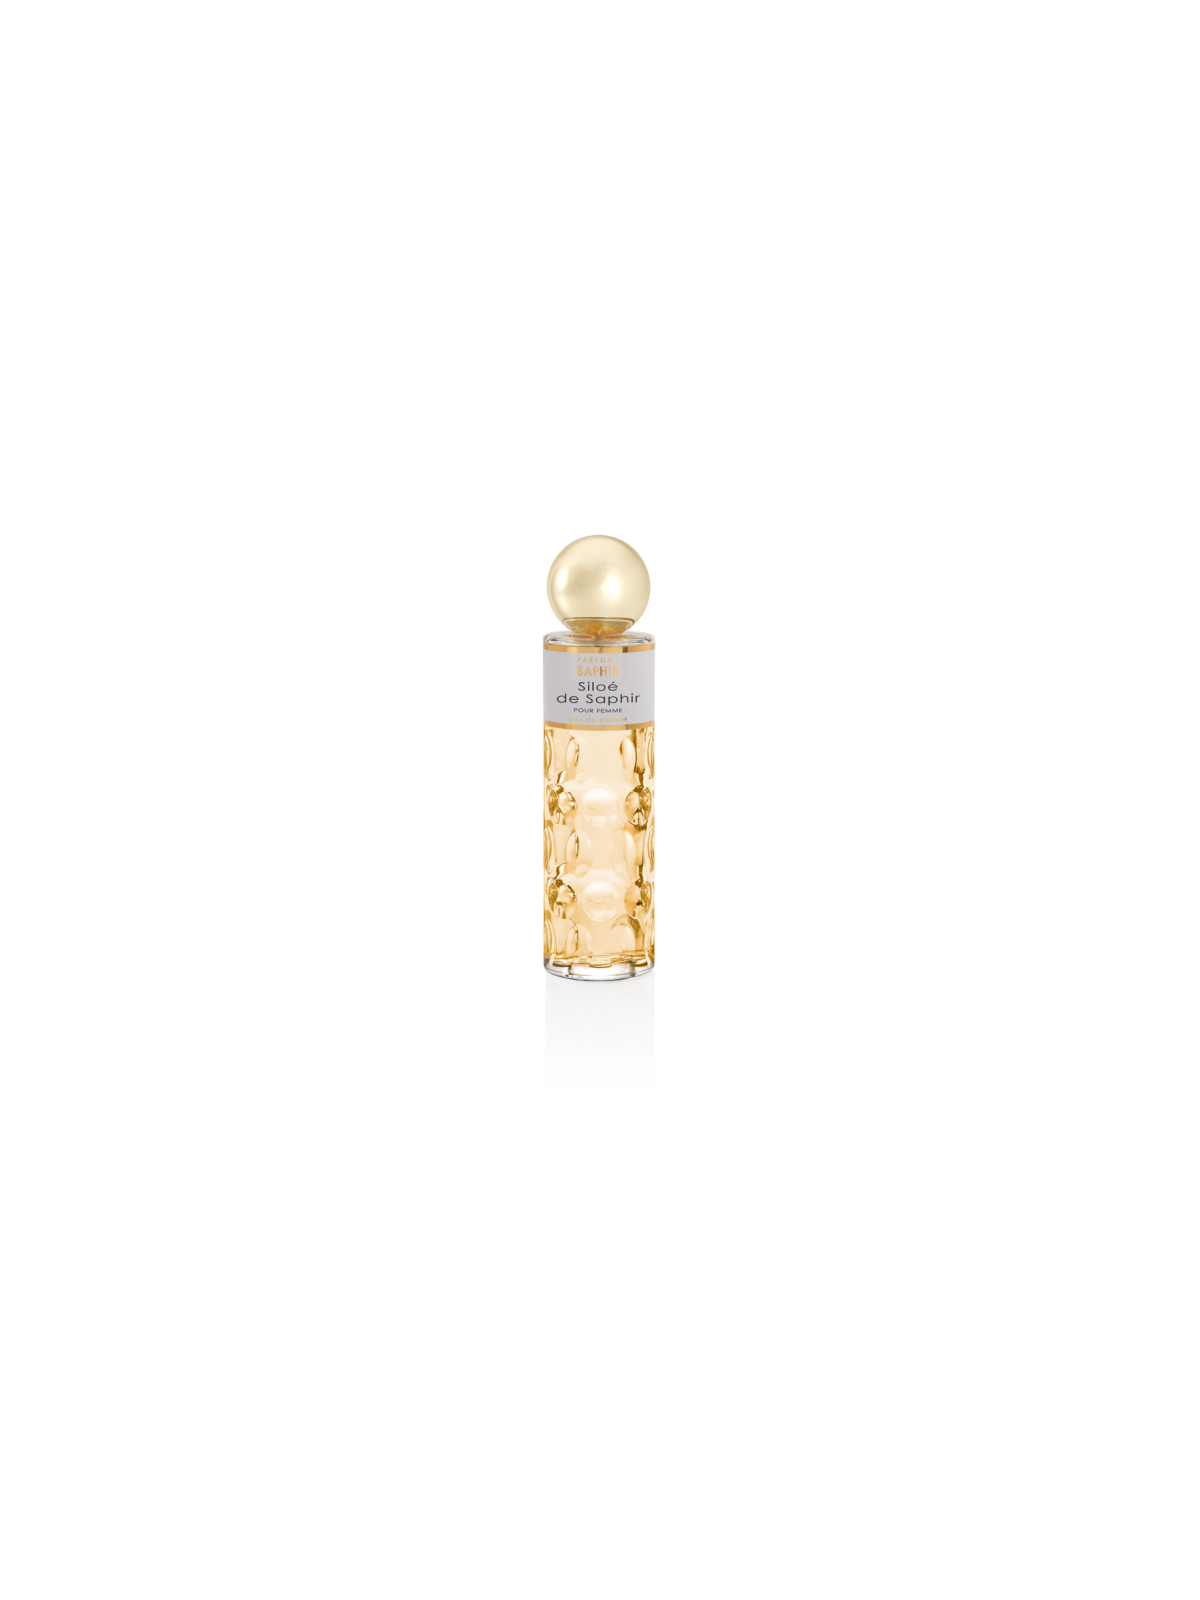 Comprar Perfume SAPHIR Siloé de Saphir 200ml. en Perfumes para mujer por sólo 12,90 € o un precio específico de 12,90 € en Thalie Care